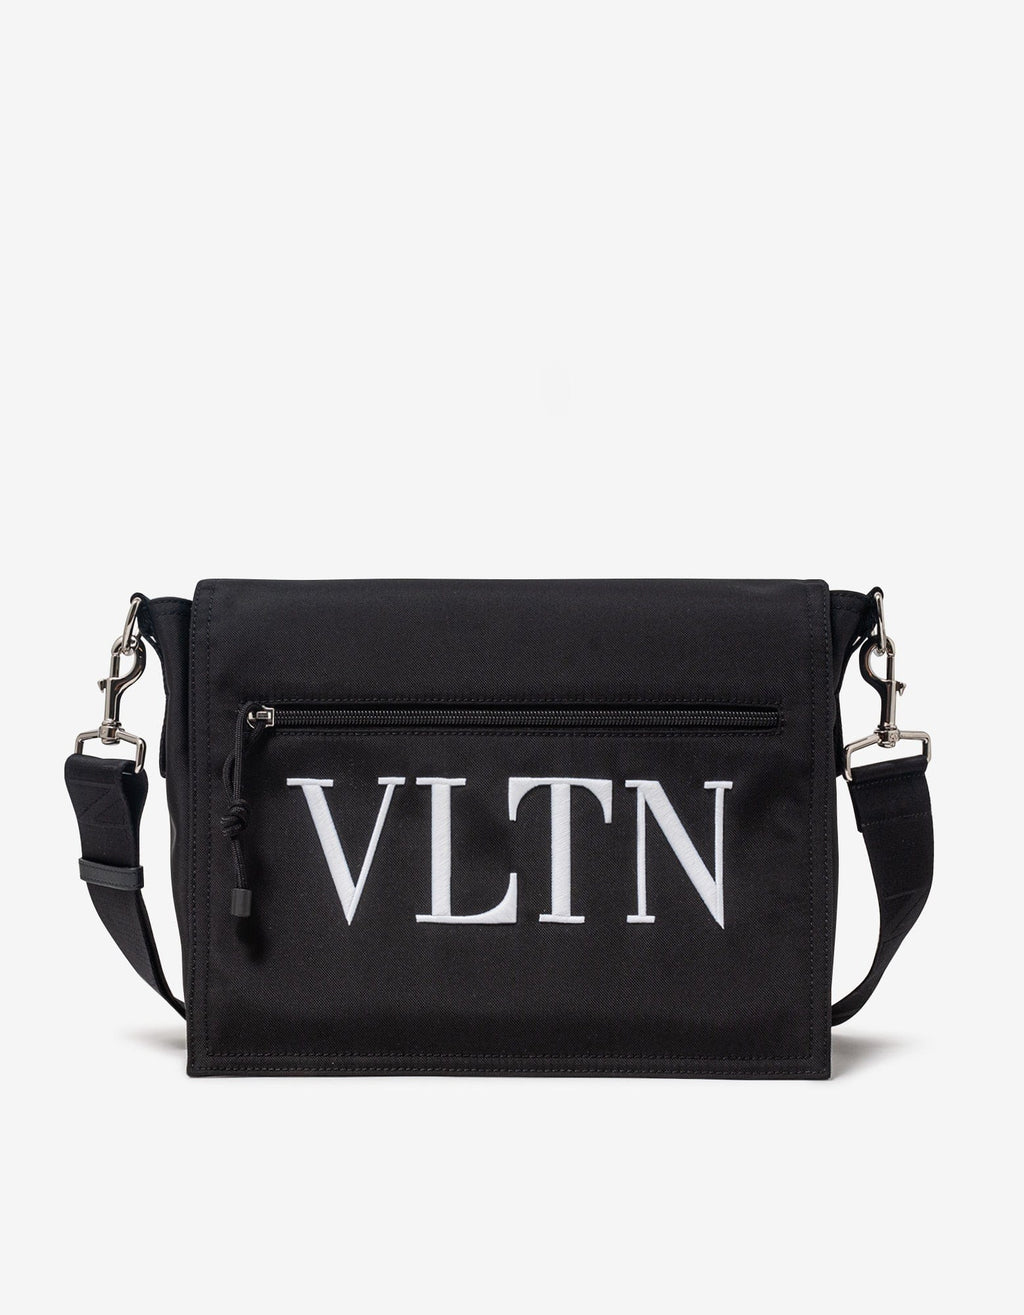 Valentino Garavani Valentino Garavani Black VLTN Nylon Messenger Bag